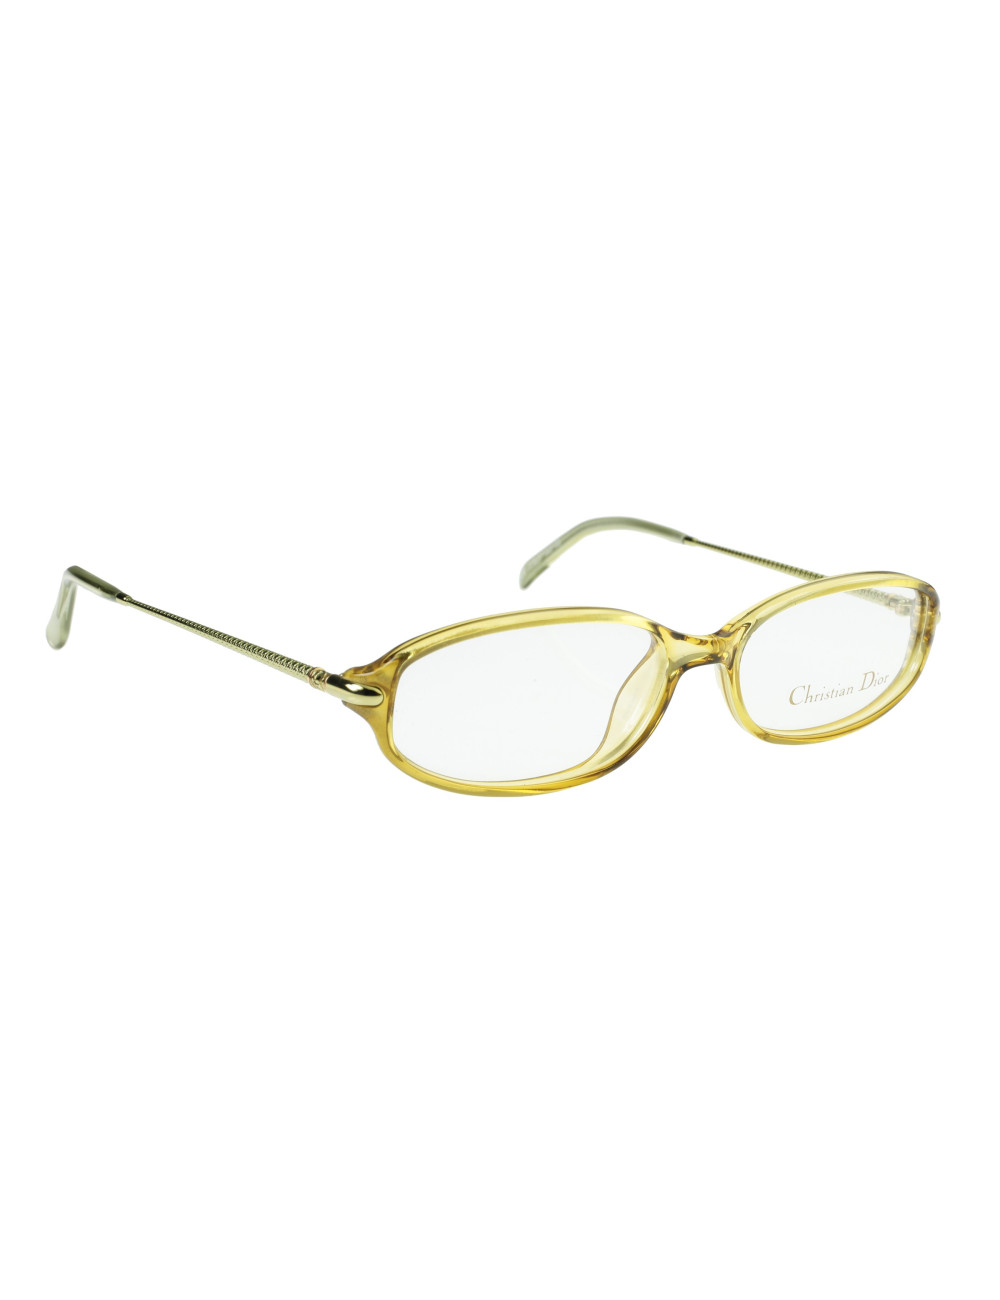 Christian Dior 2679 10 Vintage 80s Glasses Frames  Ed  Sarna Vintage  Eyewear